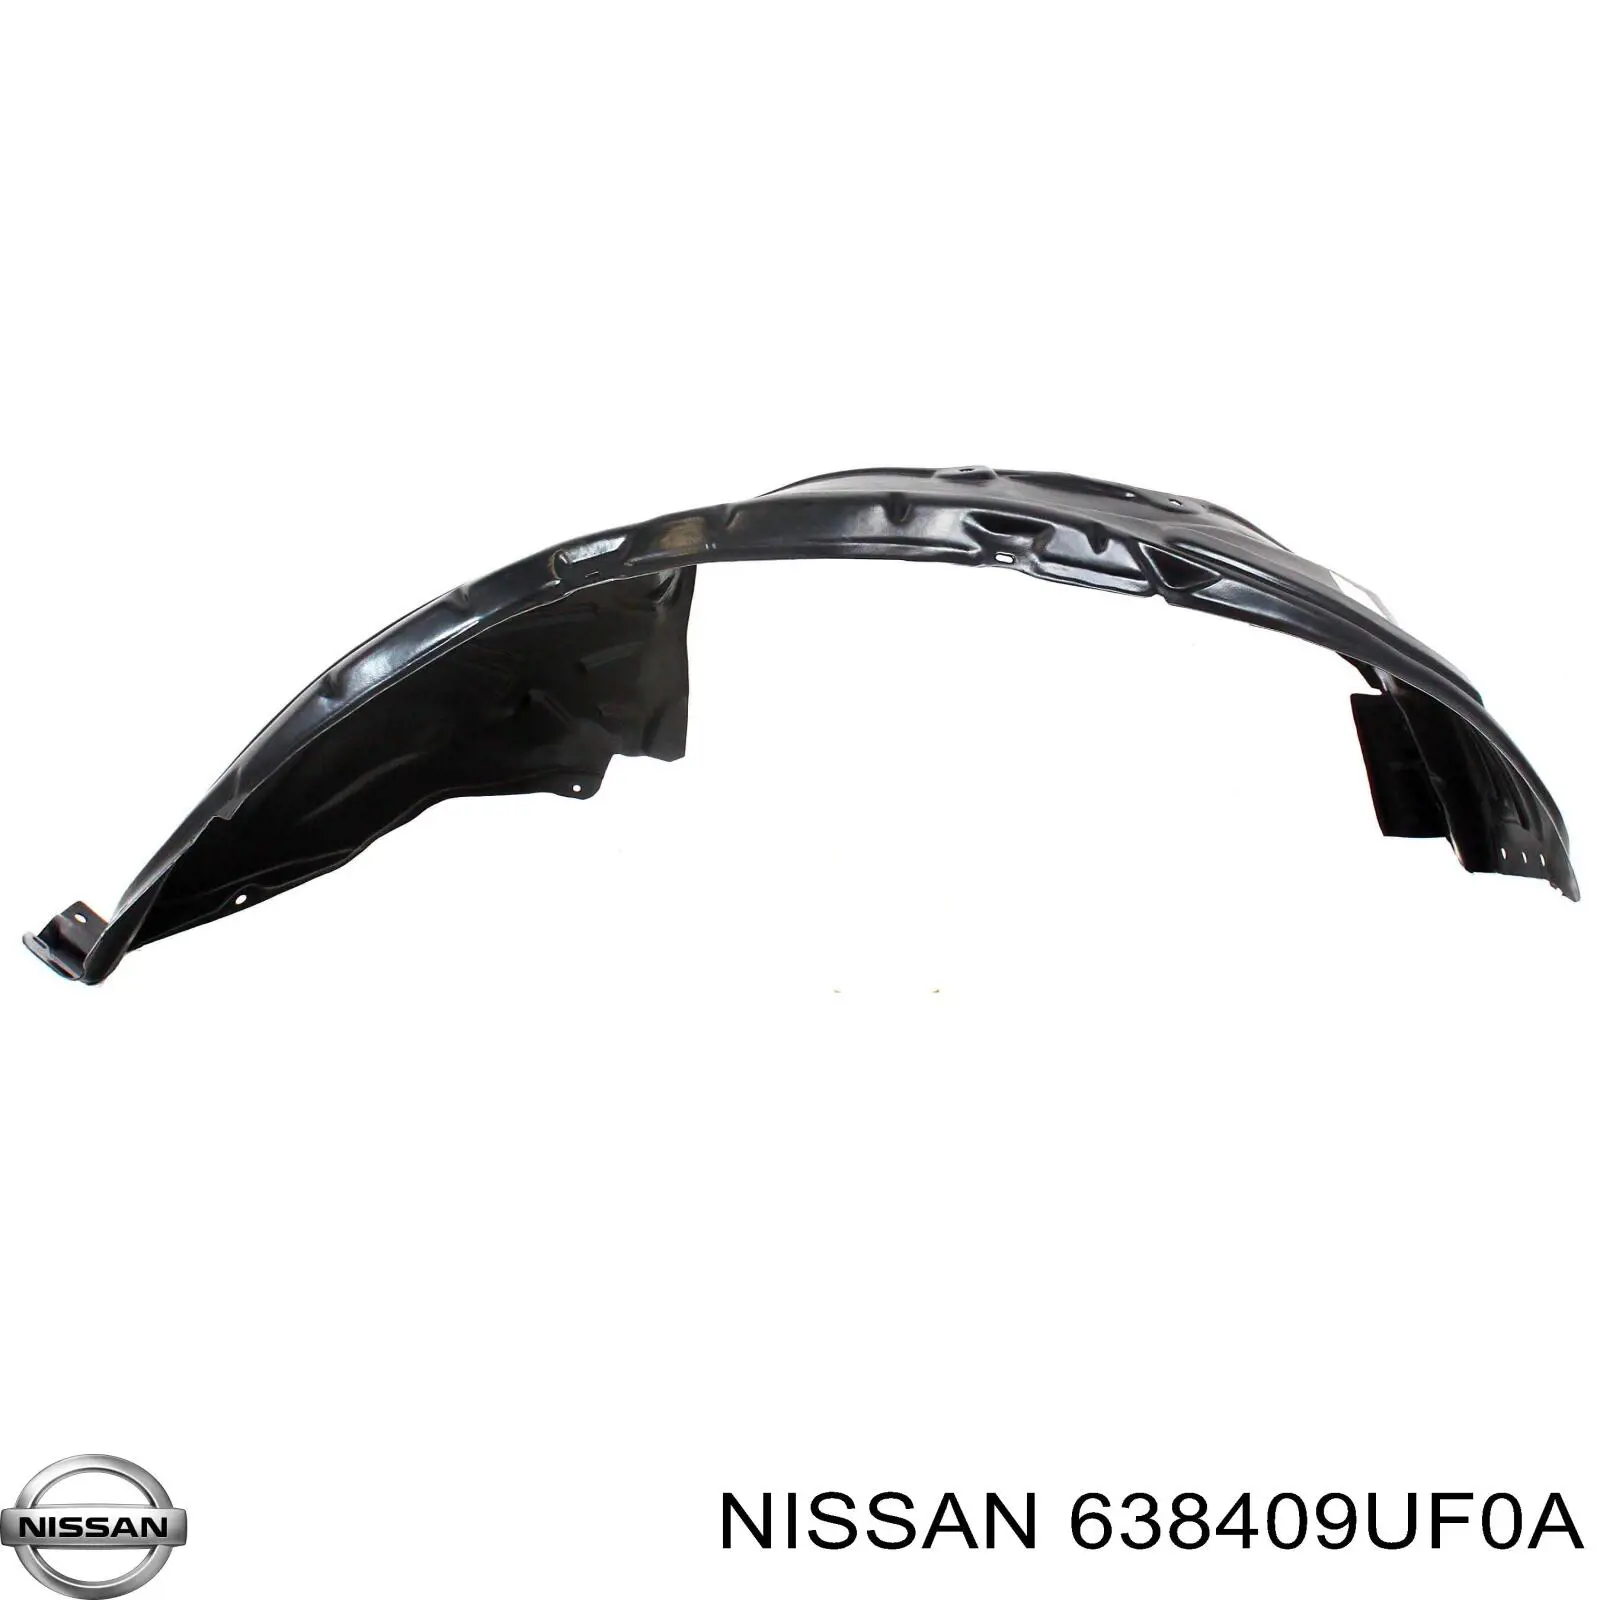 638409UF0A Nissan guardabarros interior, aleta delantera, derecho